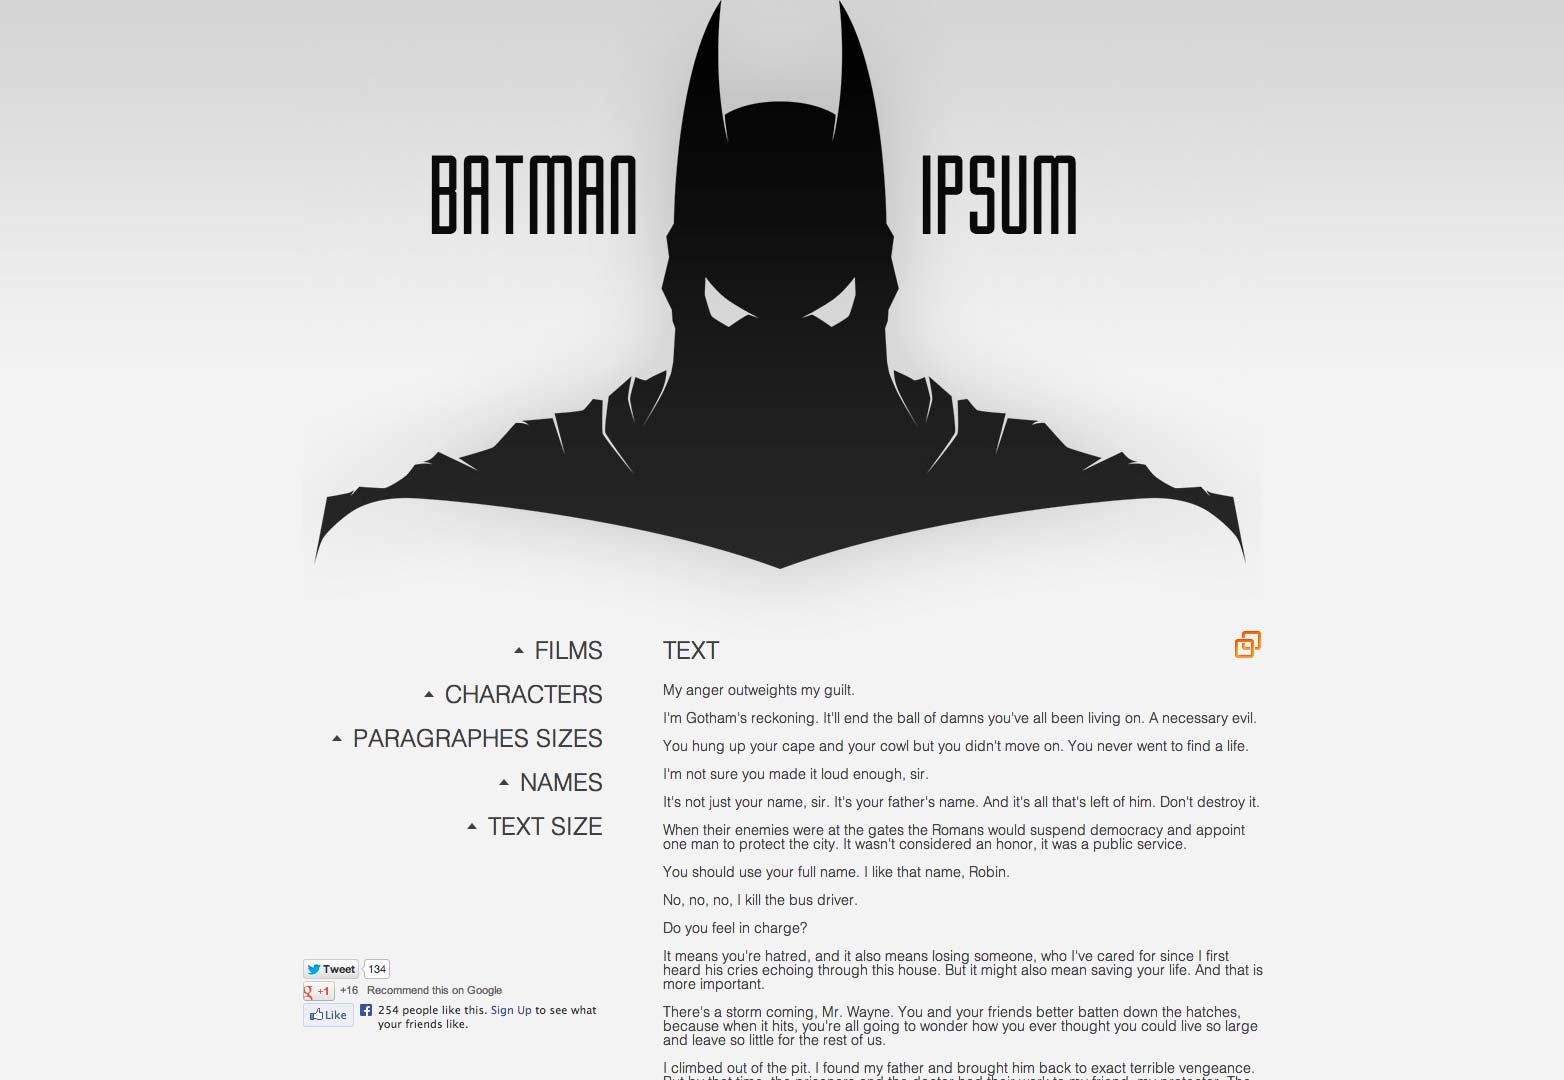 Bat-man